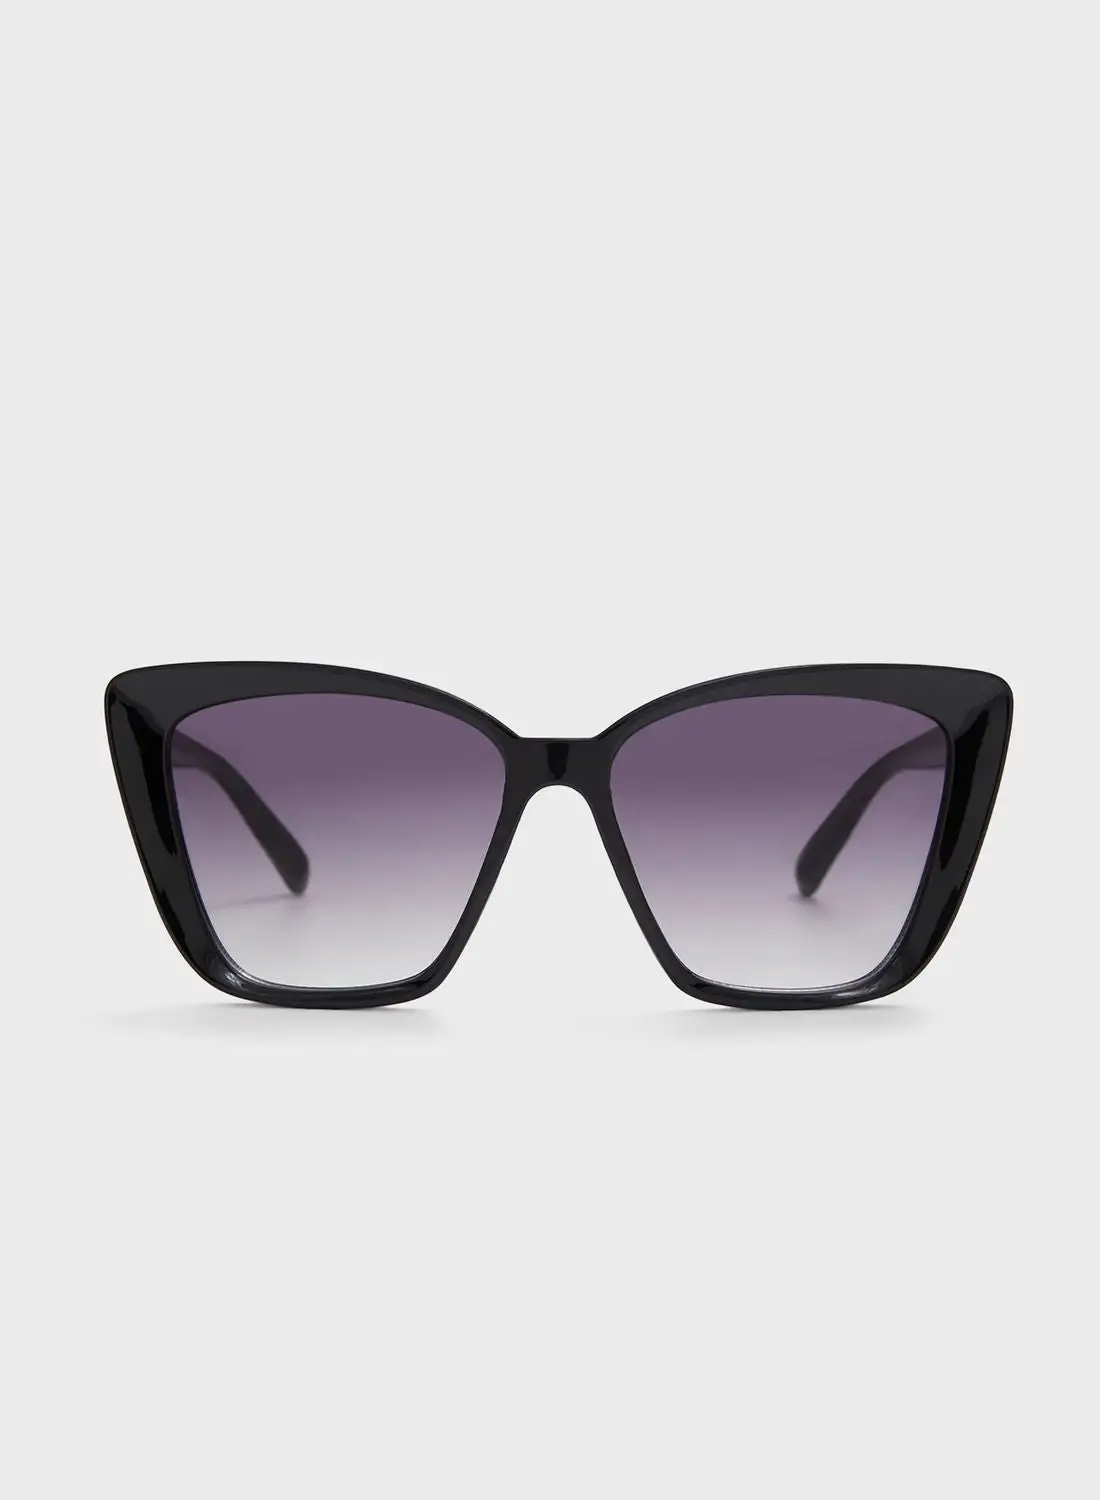 نظارات ألدو أليلالا الشمسية